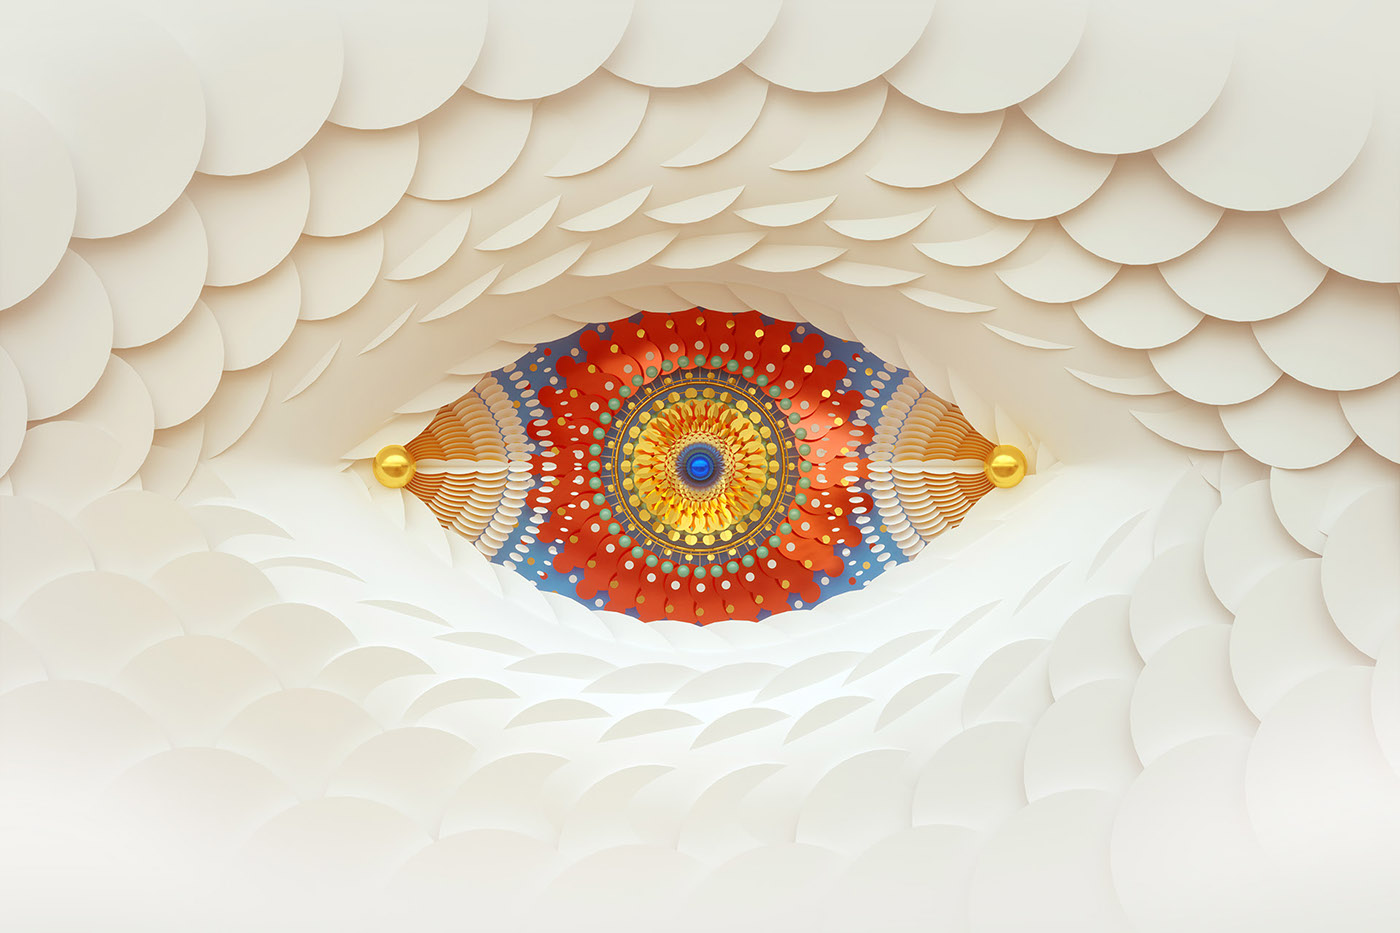 eagle chameleon raven bee snake eyes geometric 3D